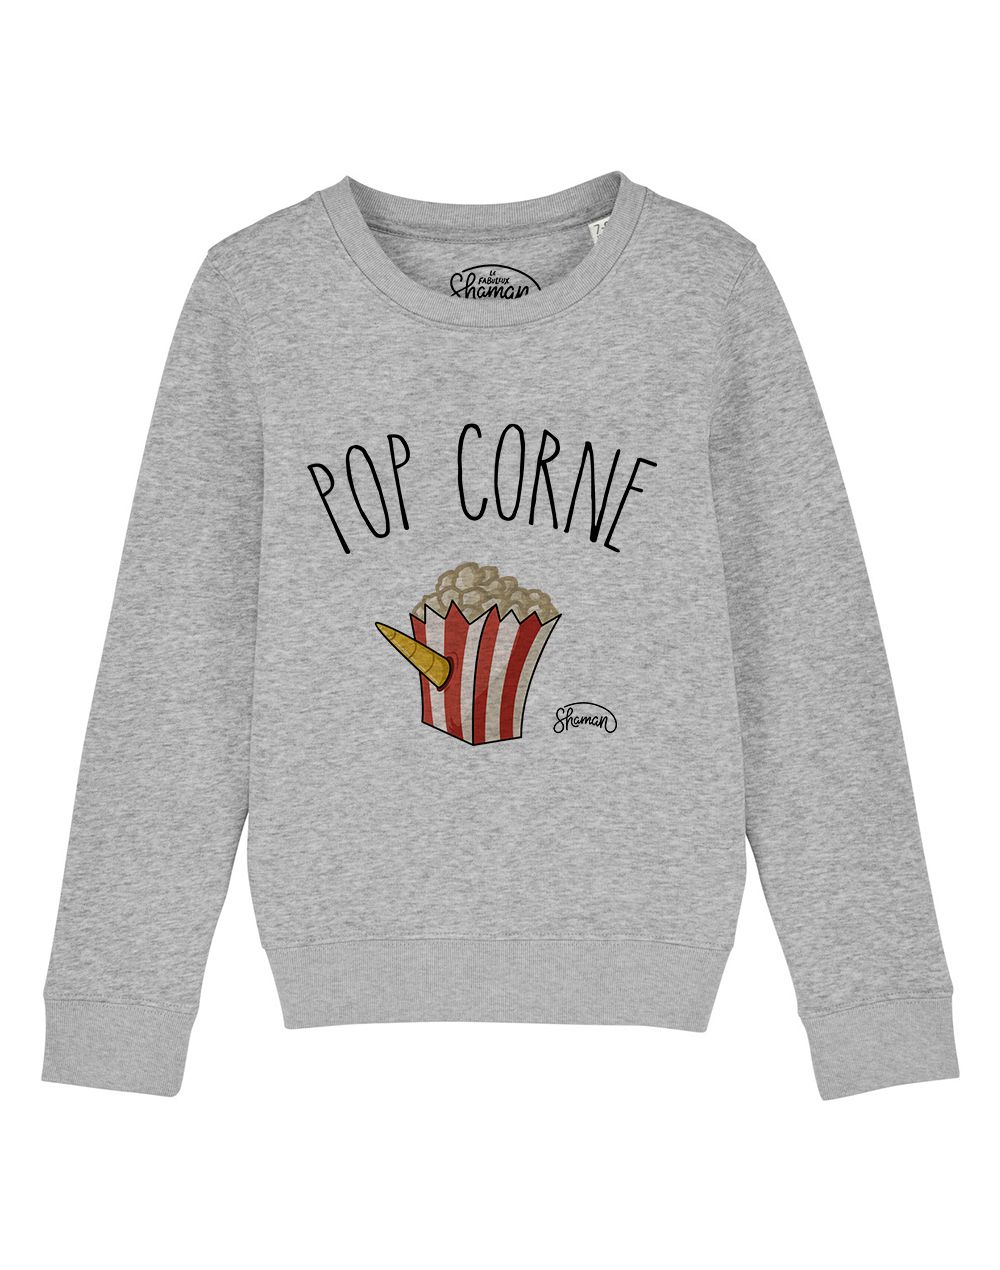 Sweat "Pop corne"